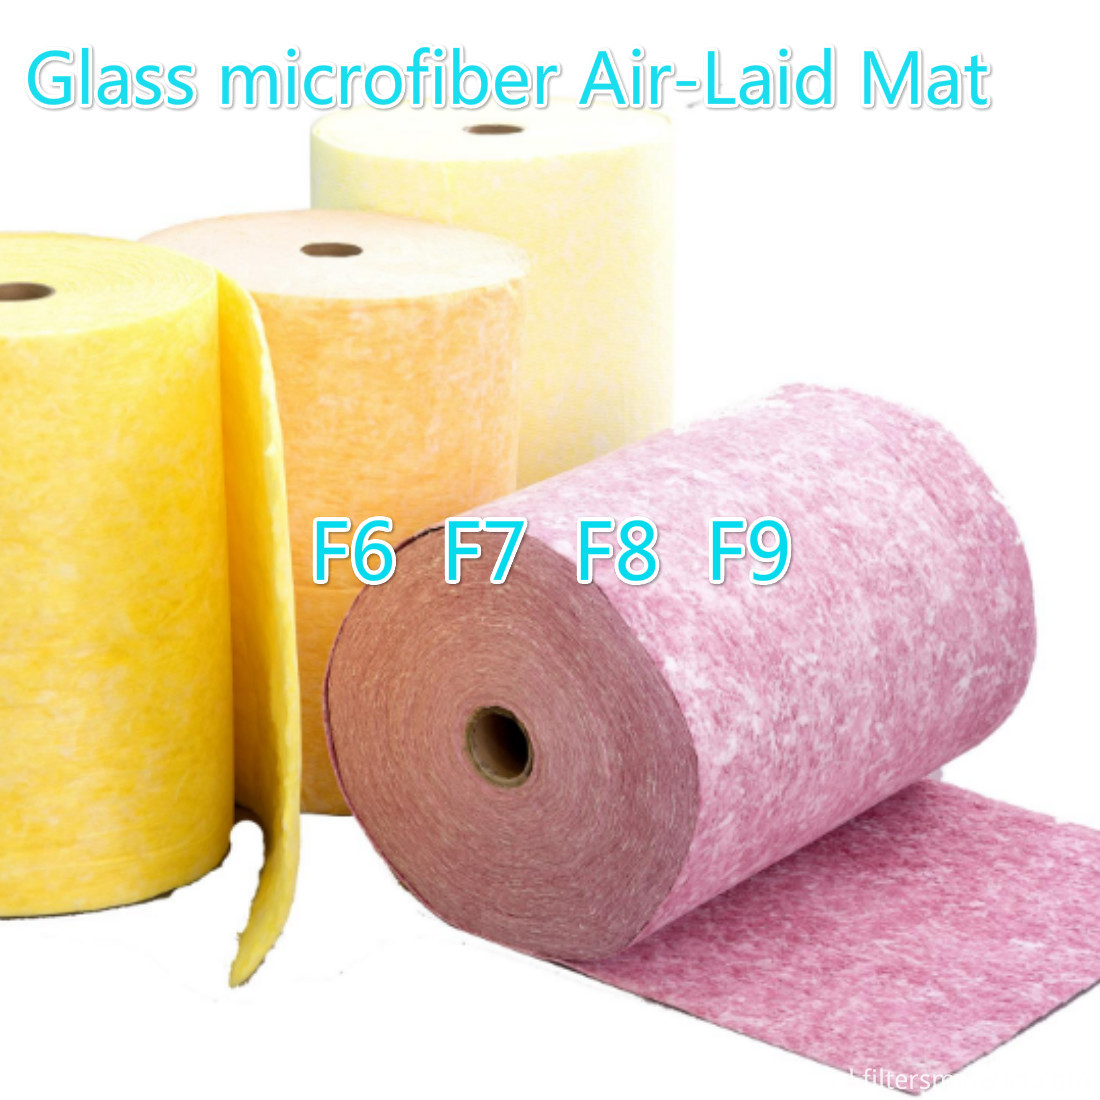 Glass microfiber Air-Laid Mat